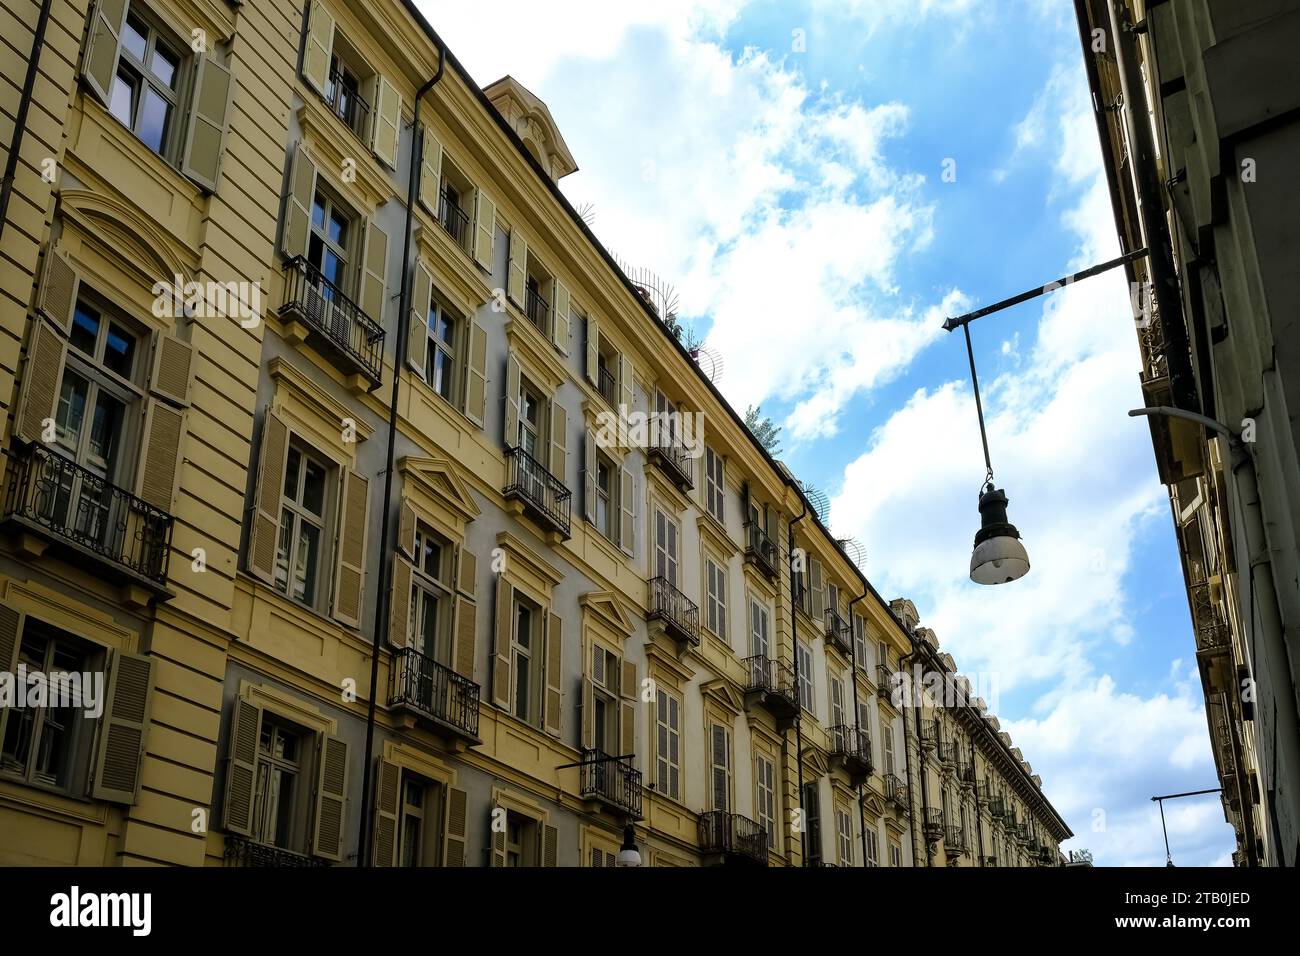 Particolare architettonico di via Giuseppe Garibaldi, una strada pedonale, tra le principali del centro storico di Torino, regione Piemonte, Italia Foto Stock